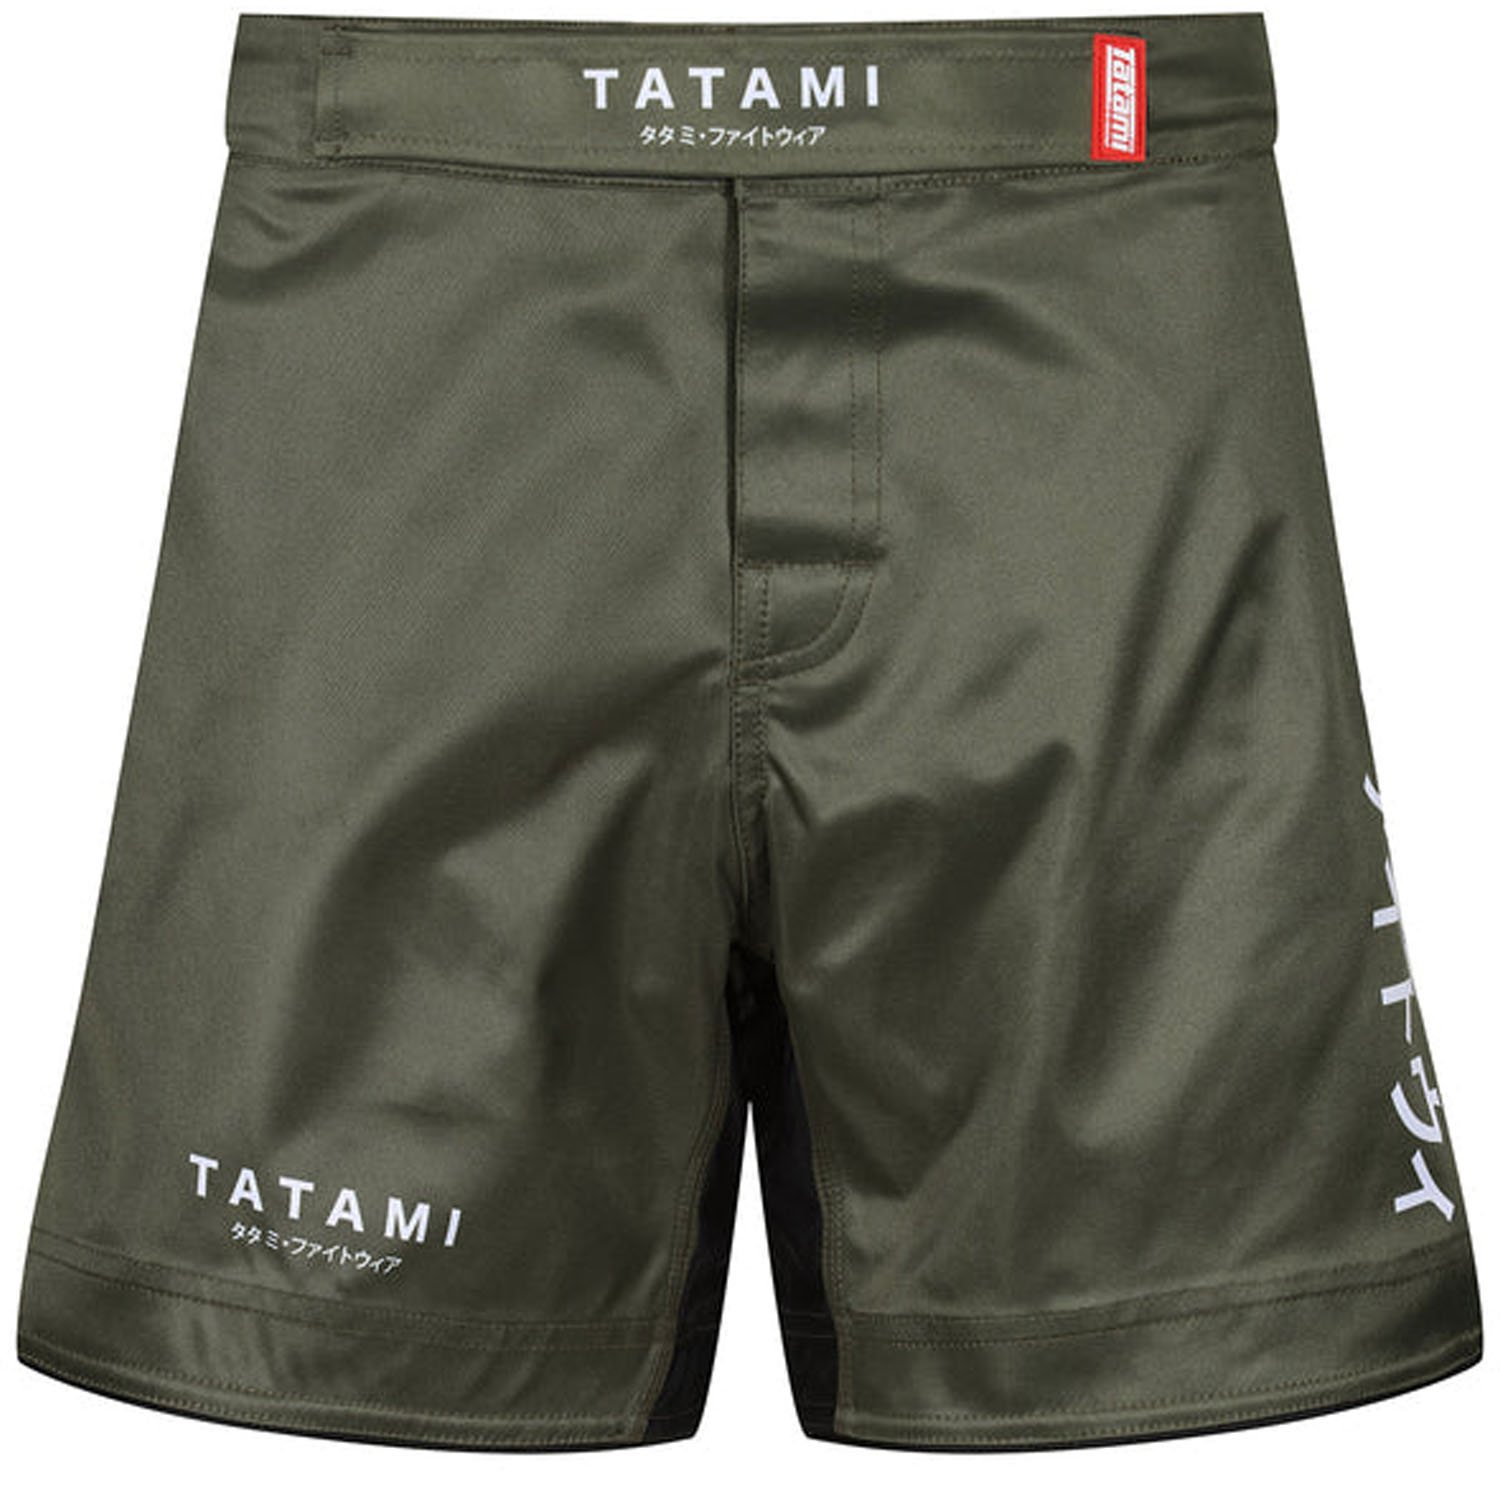 Tatami MMA Fight Short, Katakana, Khaki, S